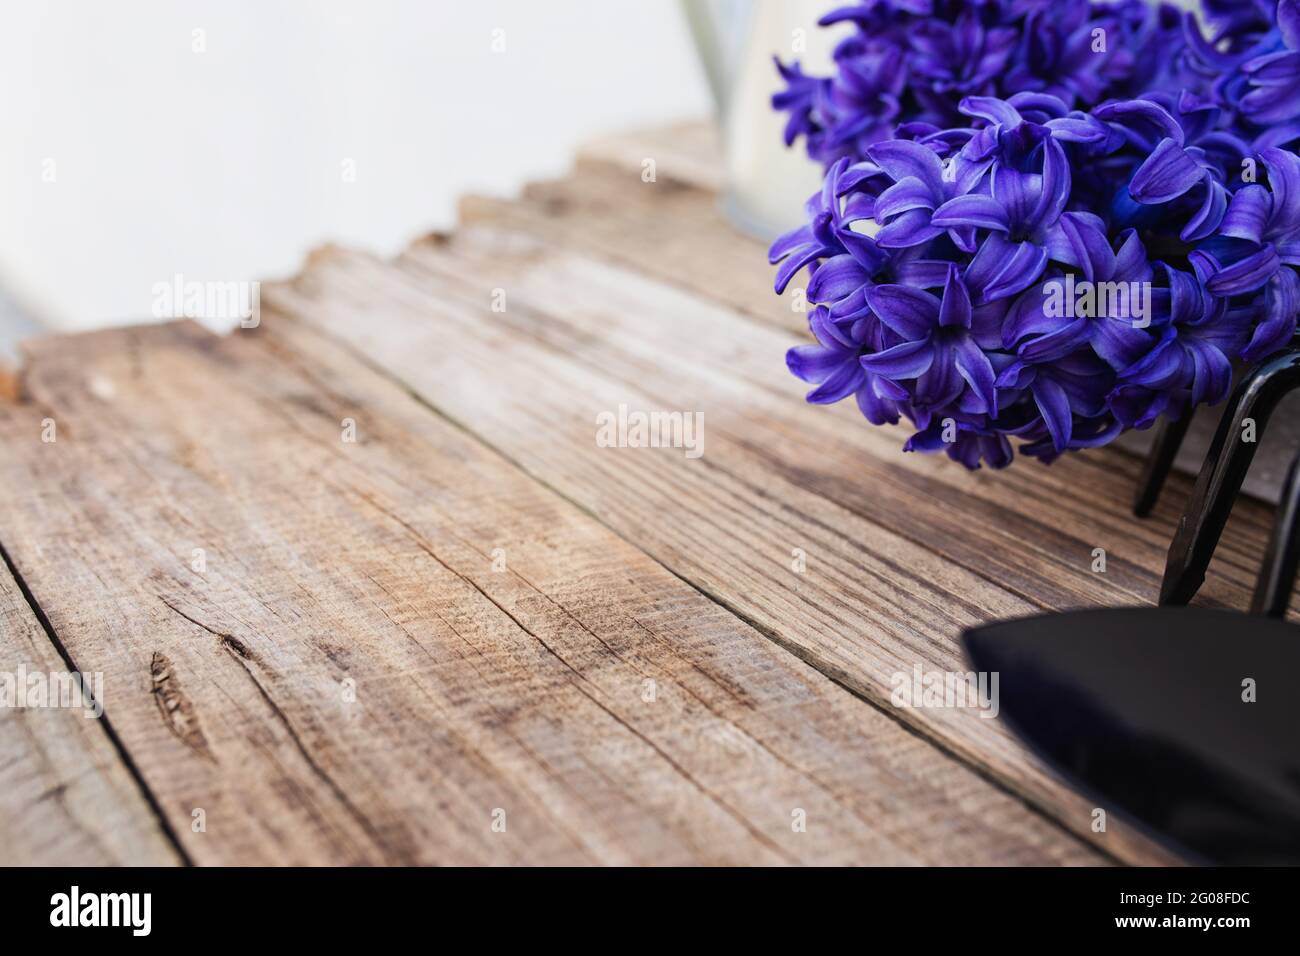 Gartenbauhobby-Konzept. Blauviolette Hyazinthe-Blütenblüte, kleine Garten-Pitchfork oder Rechen und Schaufel auf altem Holztisch-Hintergrund Stockfoto